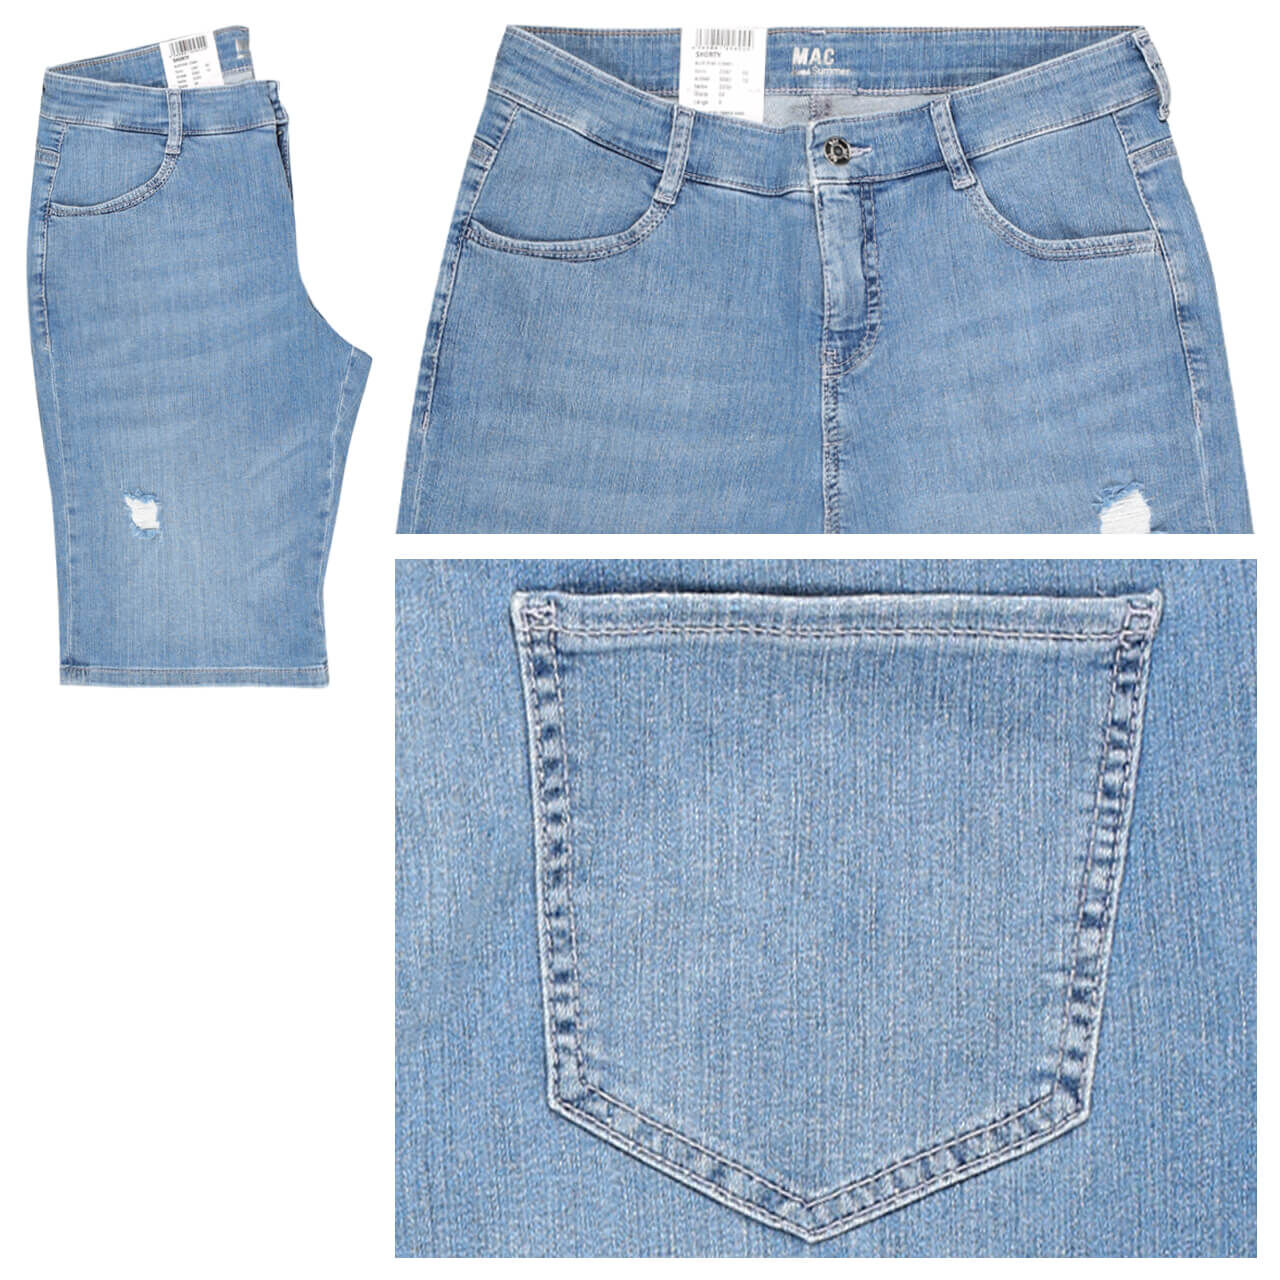 MAC Jeans Shorty für Damen in Hellblau angewaschen mit Destroyed-Effekten, FarbNr.: D209